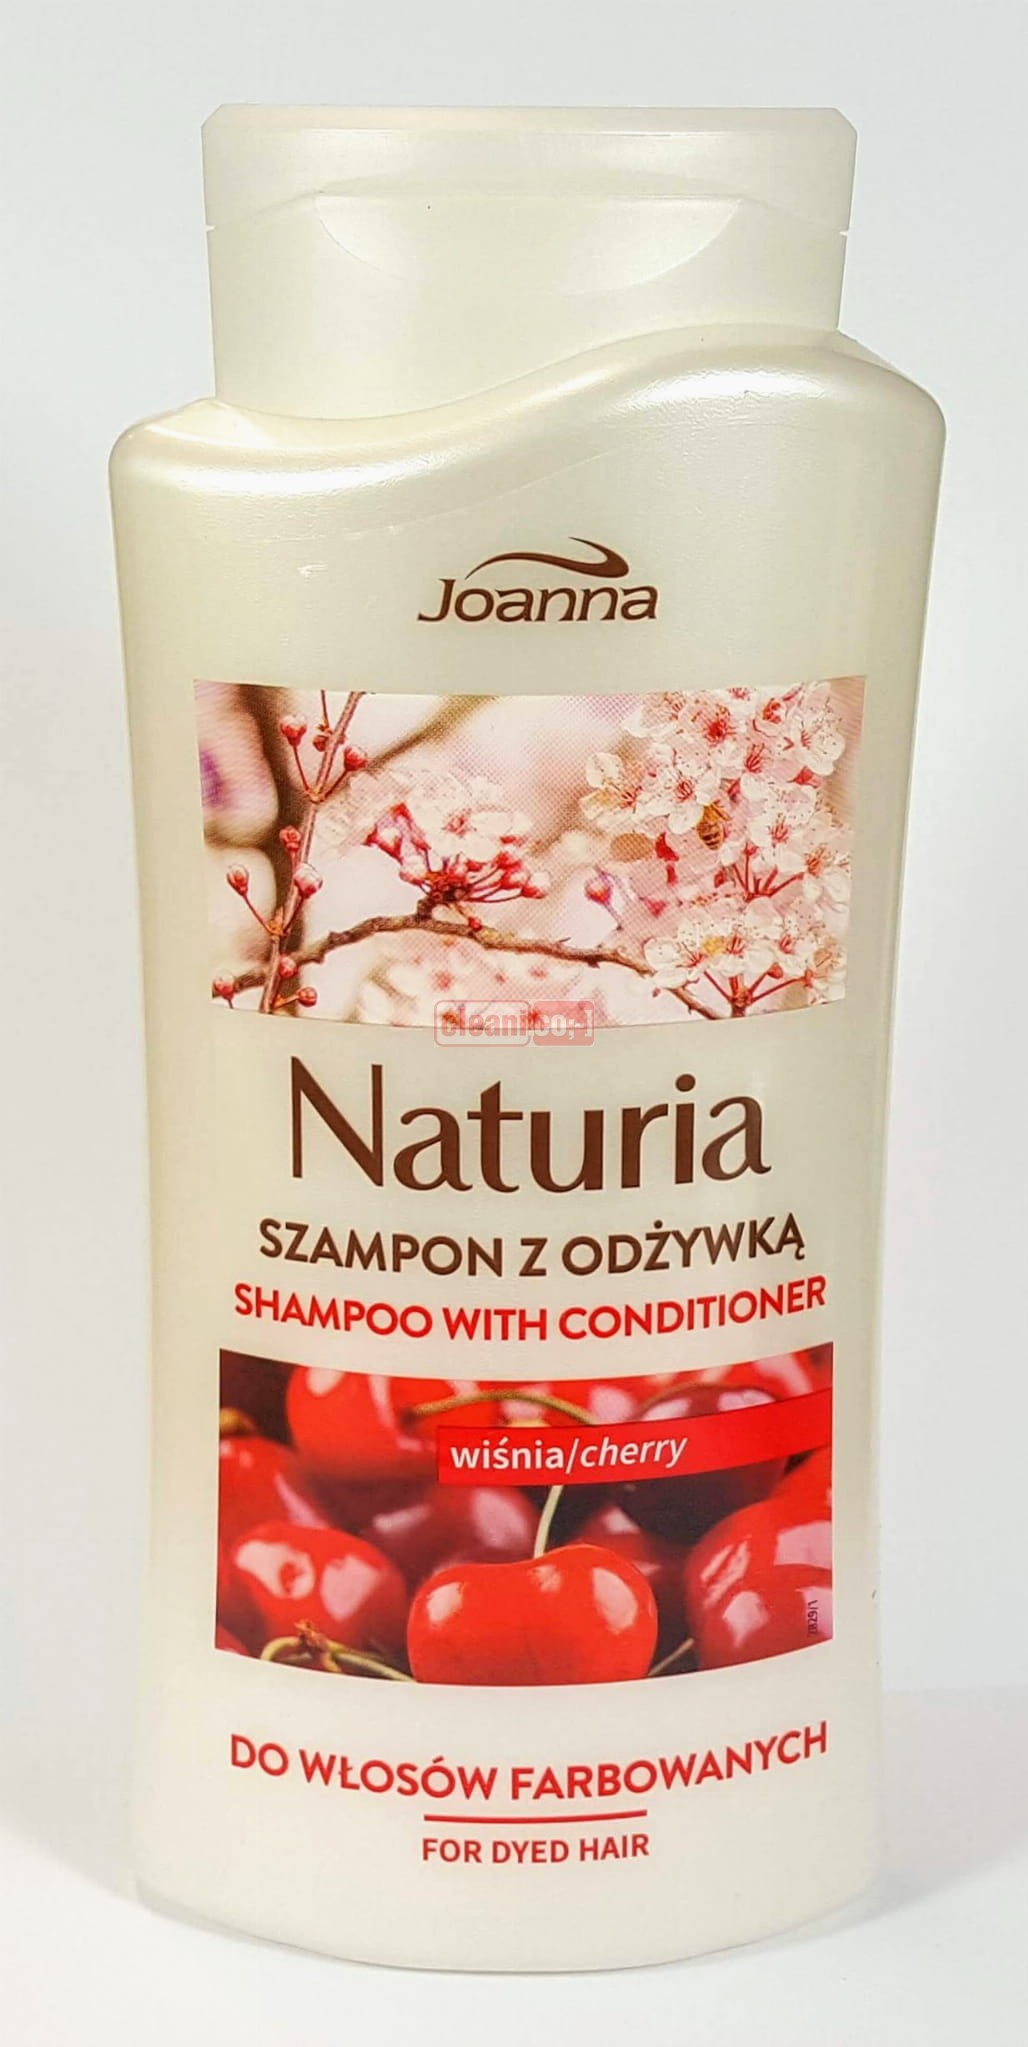 joanna szampon do włosów farbowanych wiśniowy